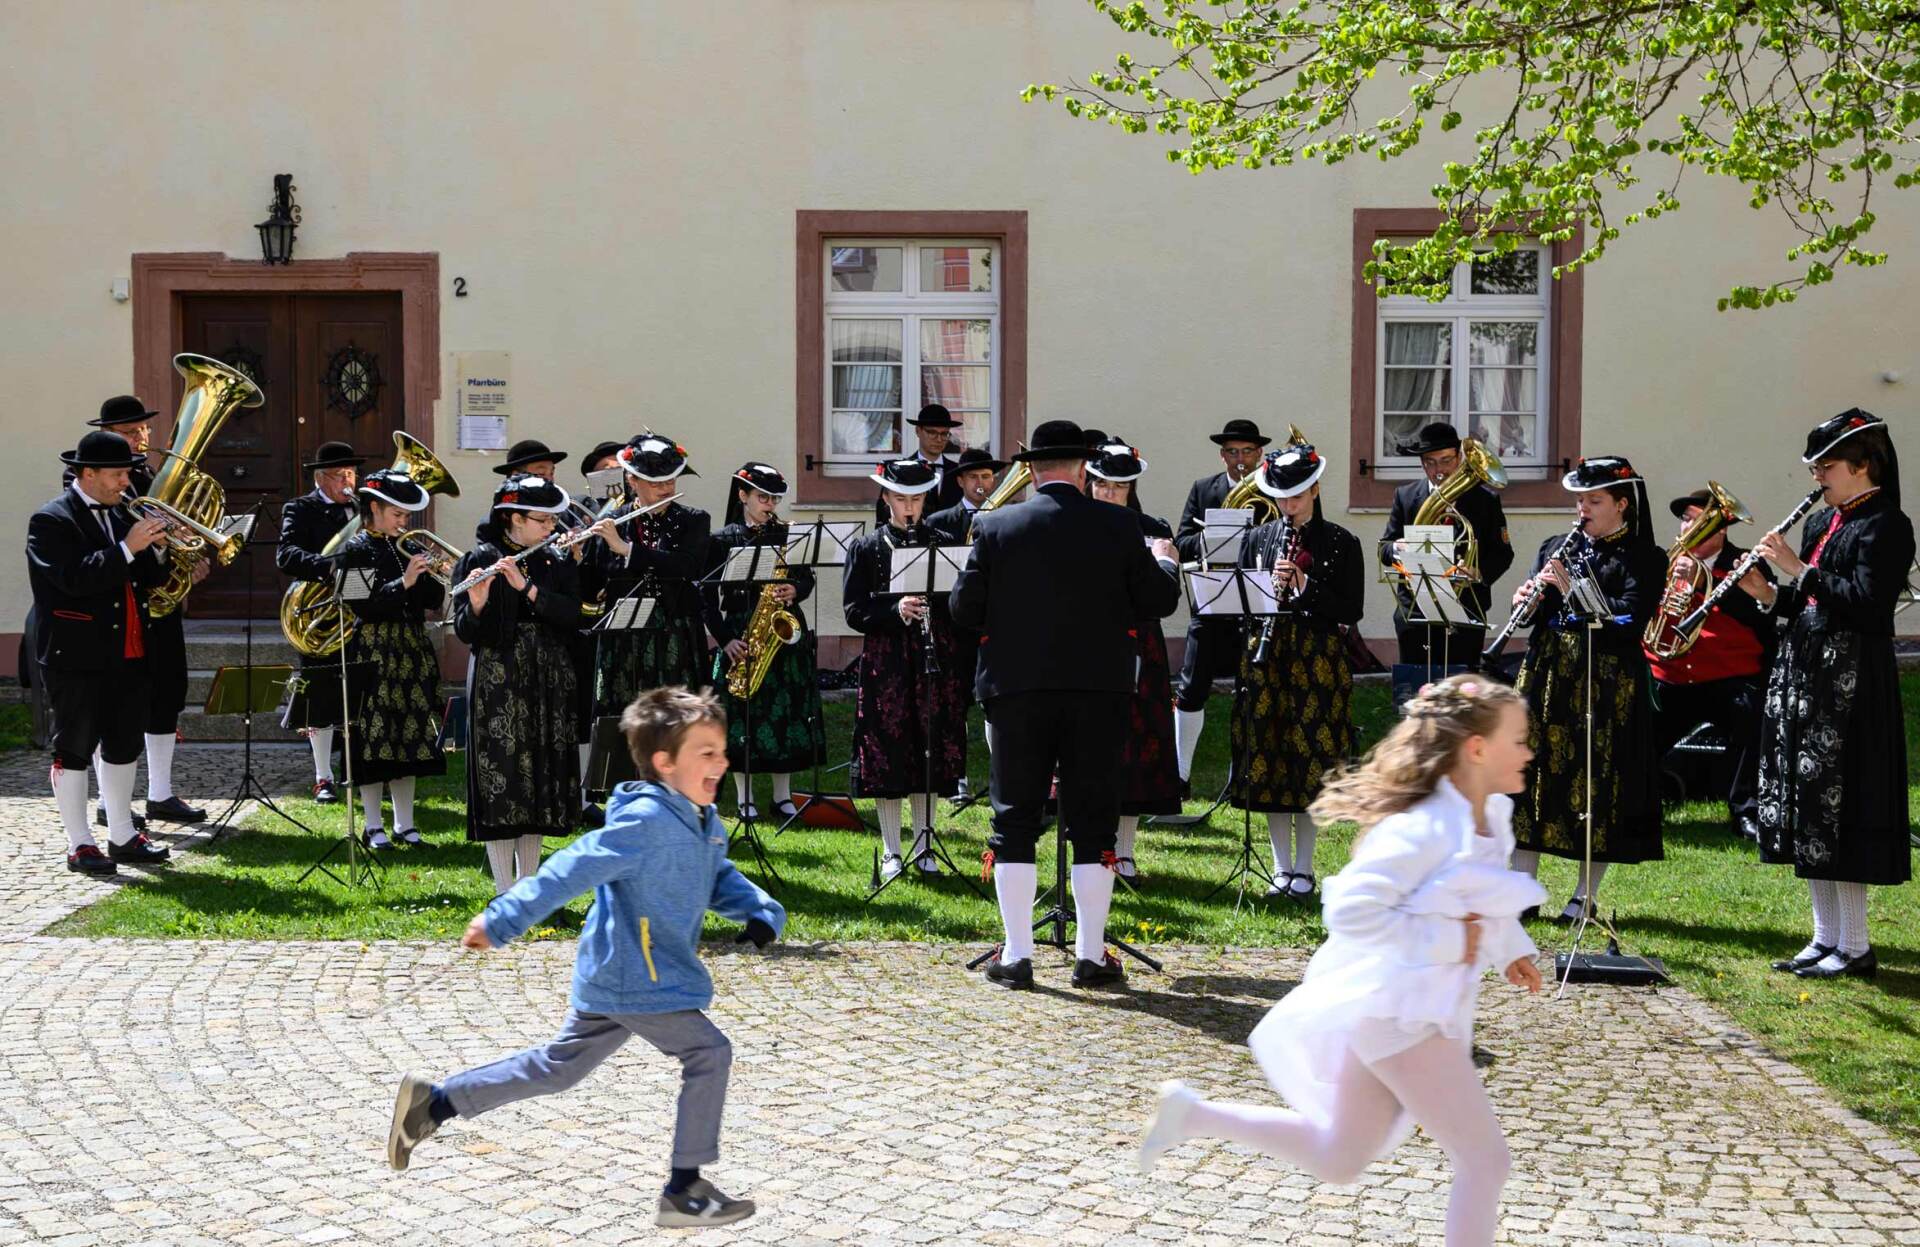 Ein Blasorchester spielt im Hof eines historischen Gebäudes im Schwarzwald, davor laufen zwei Kinder – Reise-Fotografie von WINTERPOL Hamburg